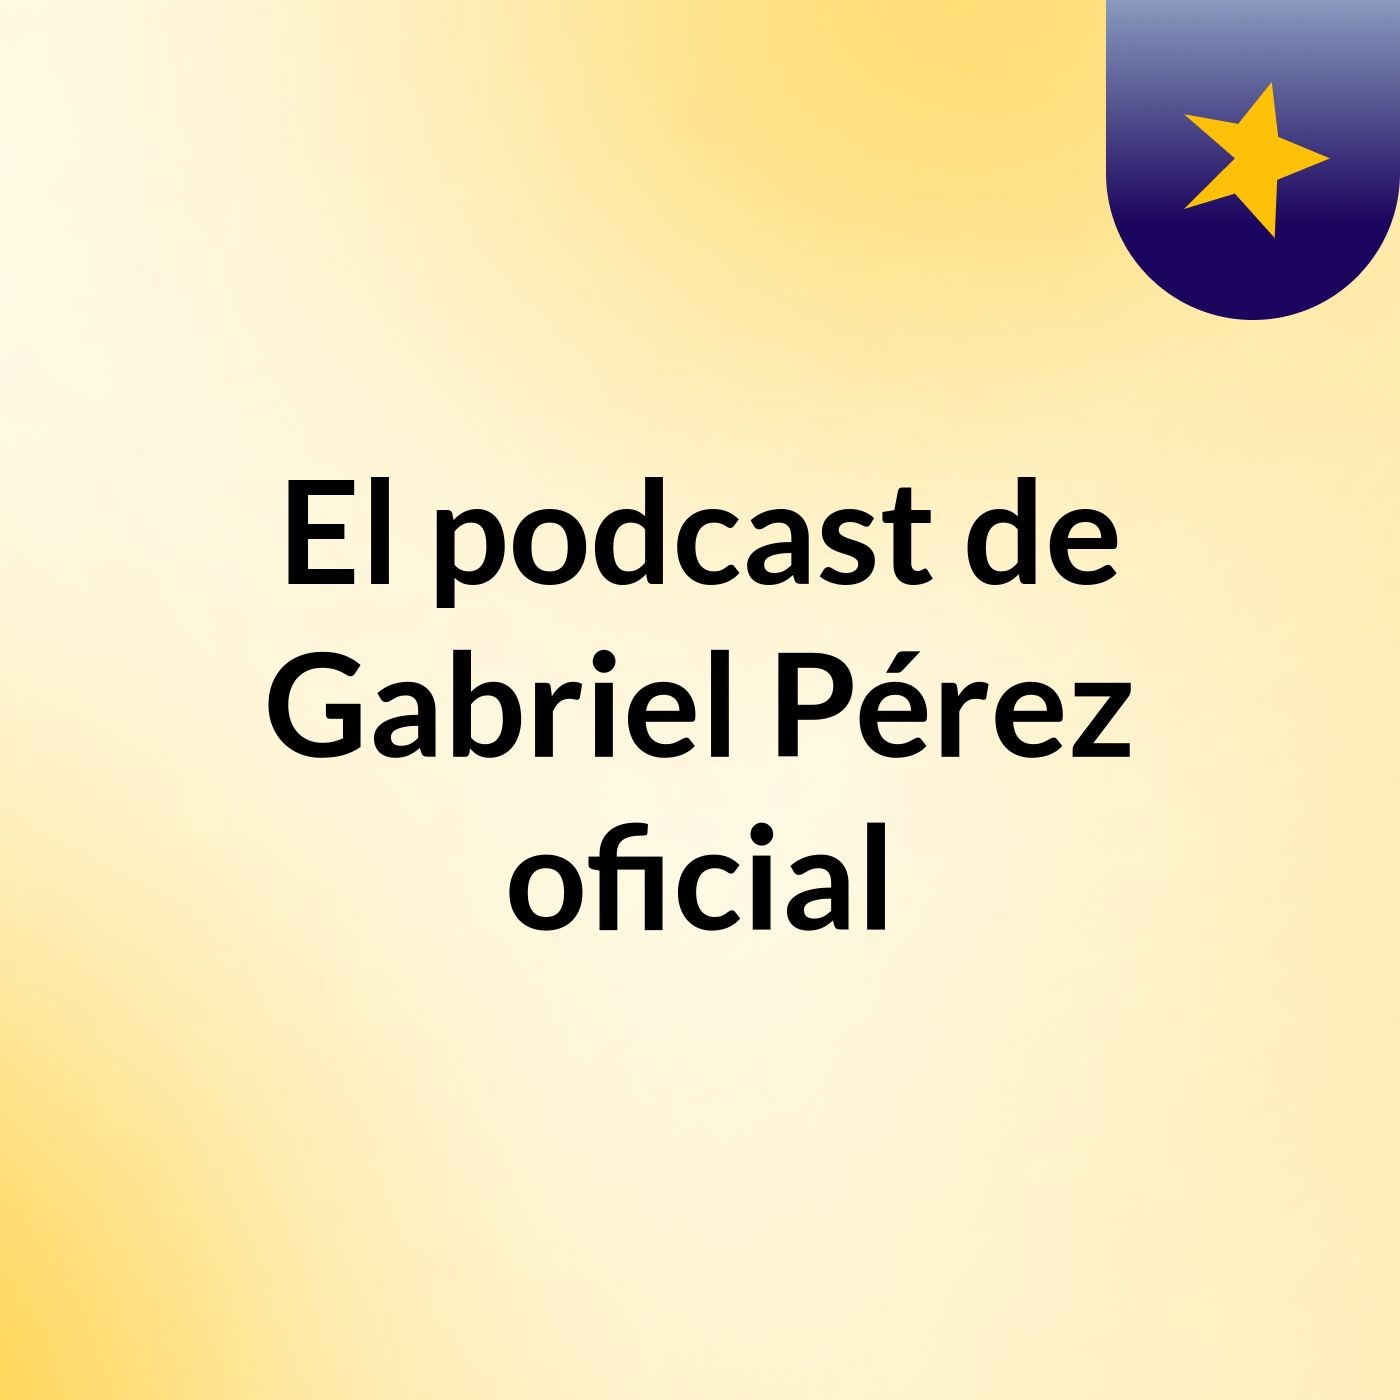 El podcast de Gabriel Pérez oficial